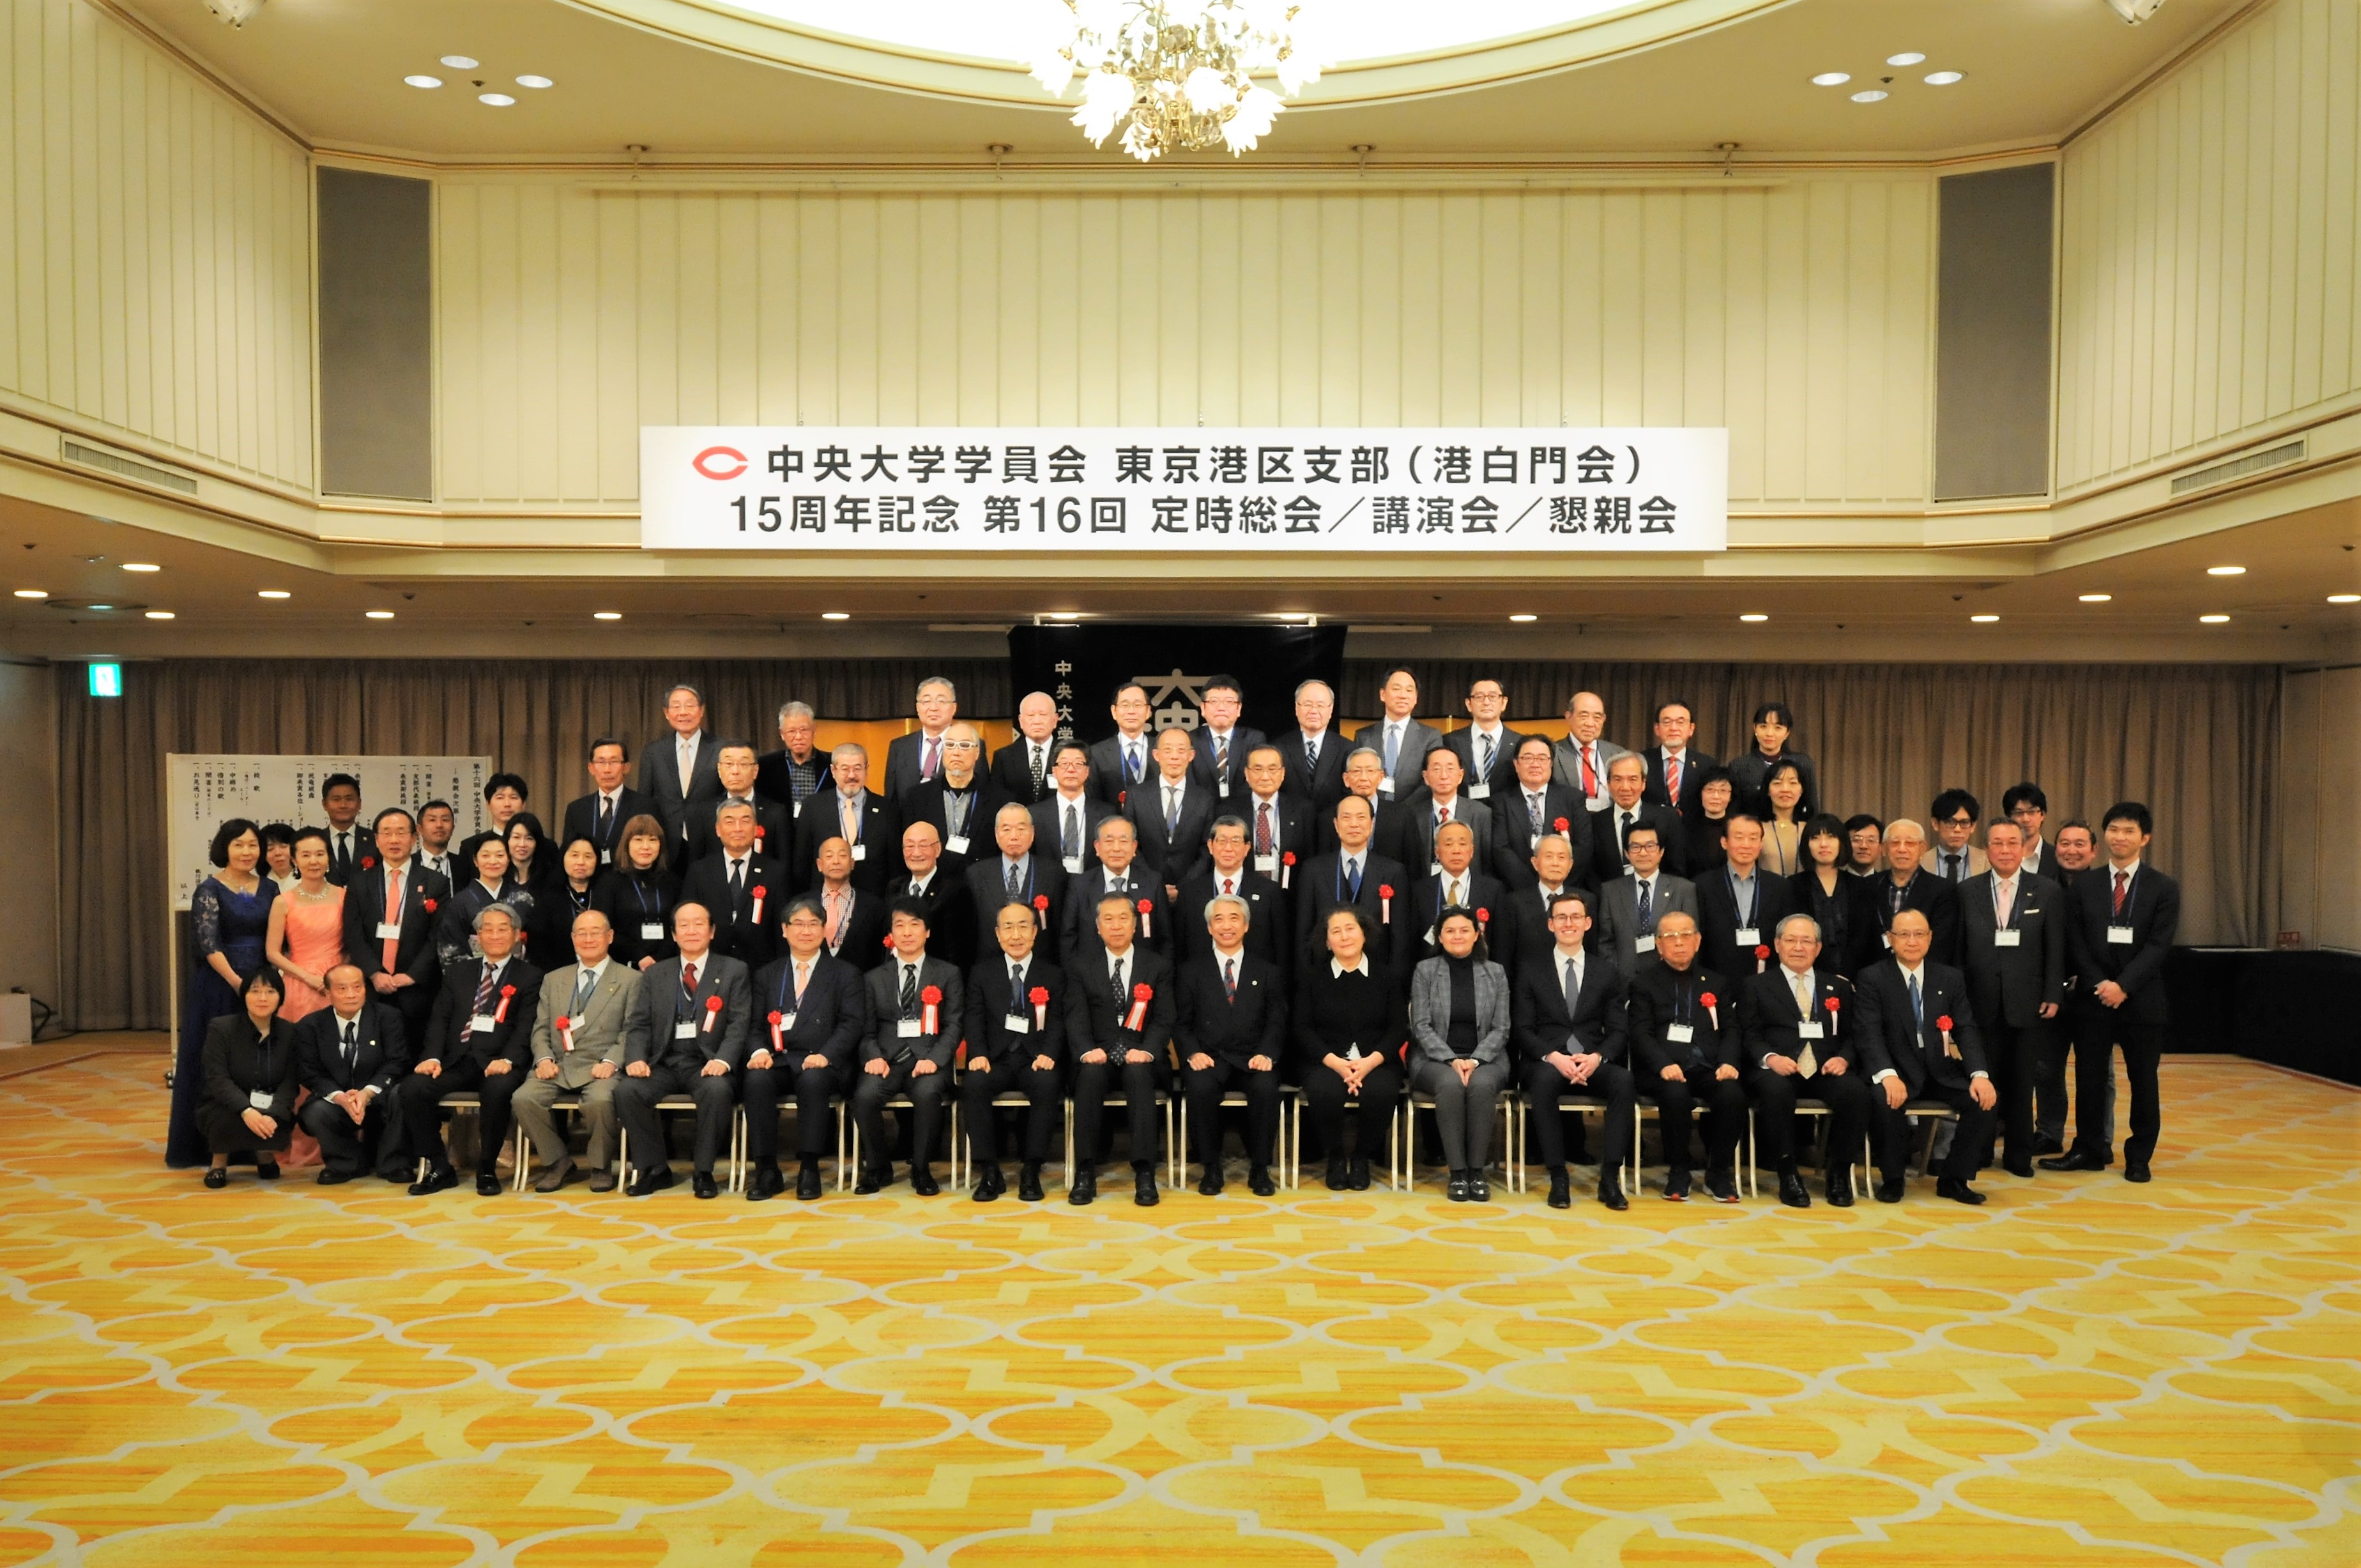 Assemblée générale de l'association des alumni de l'université de Chuo